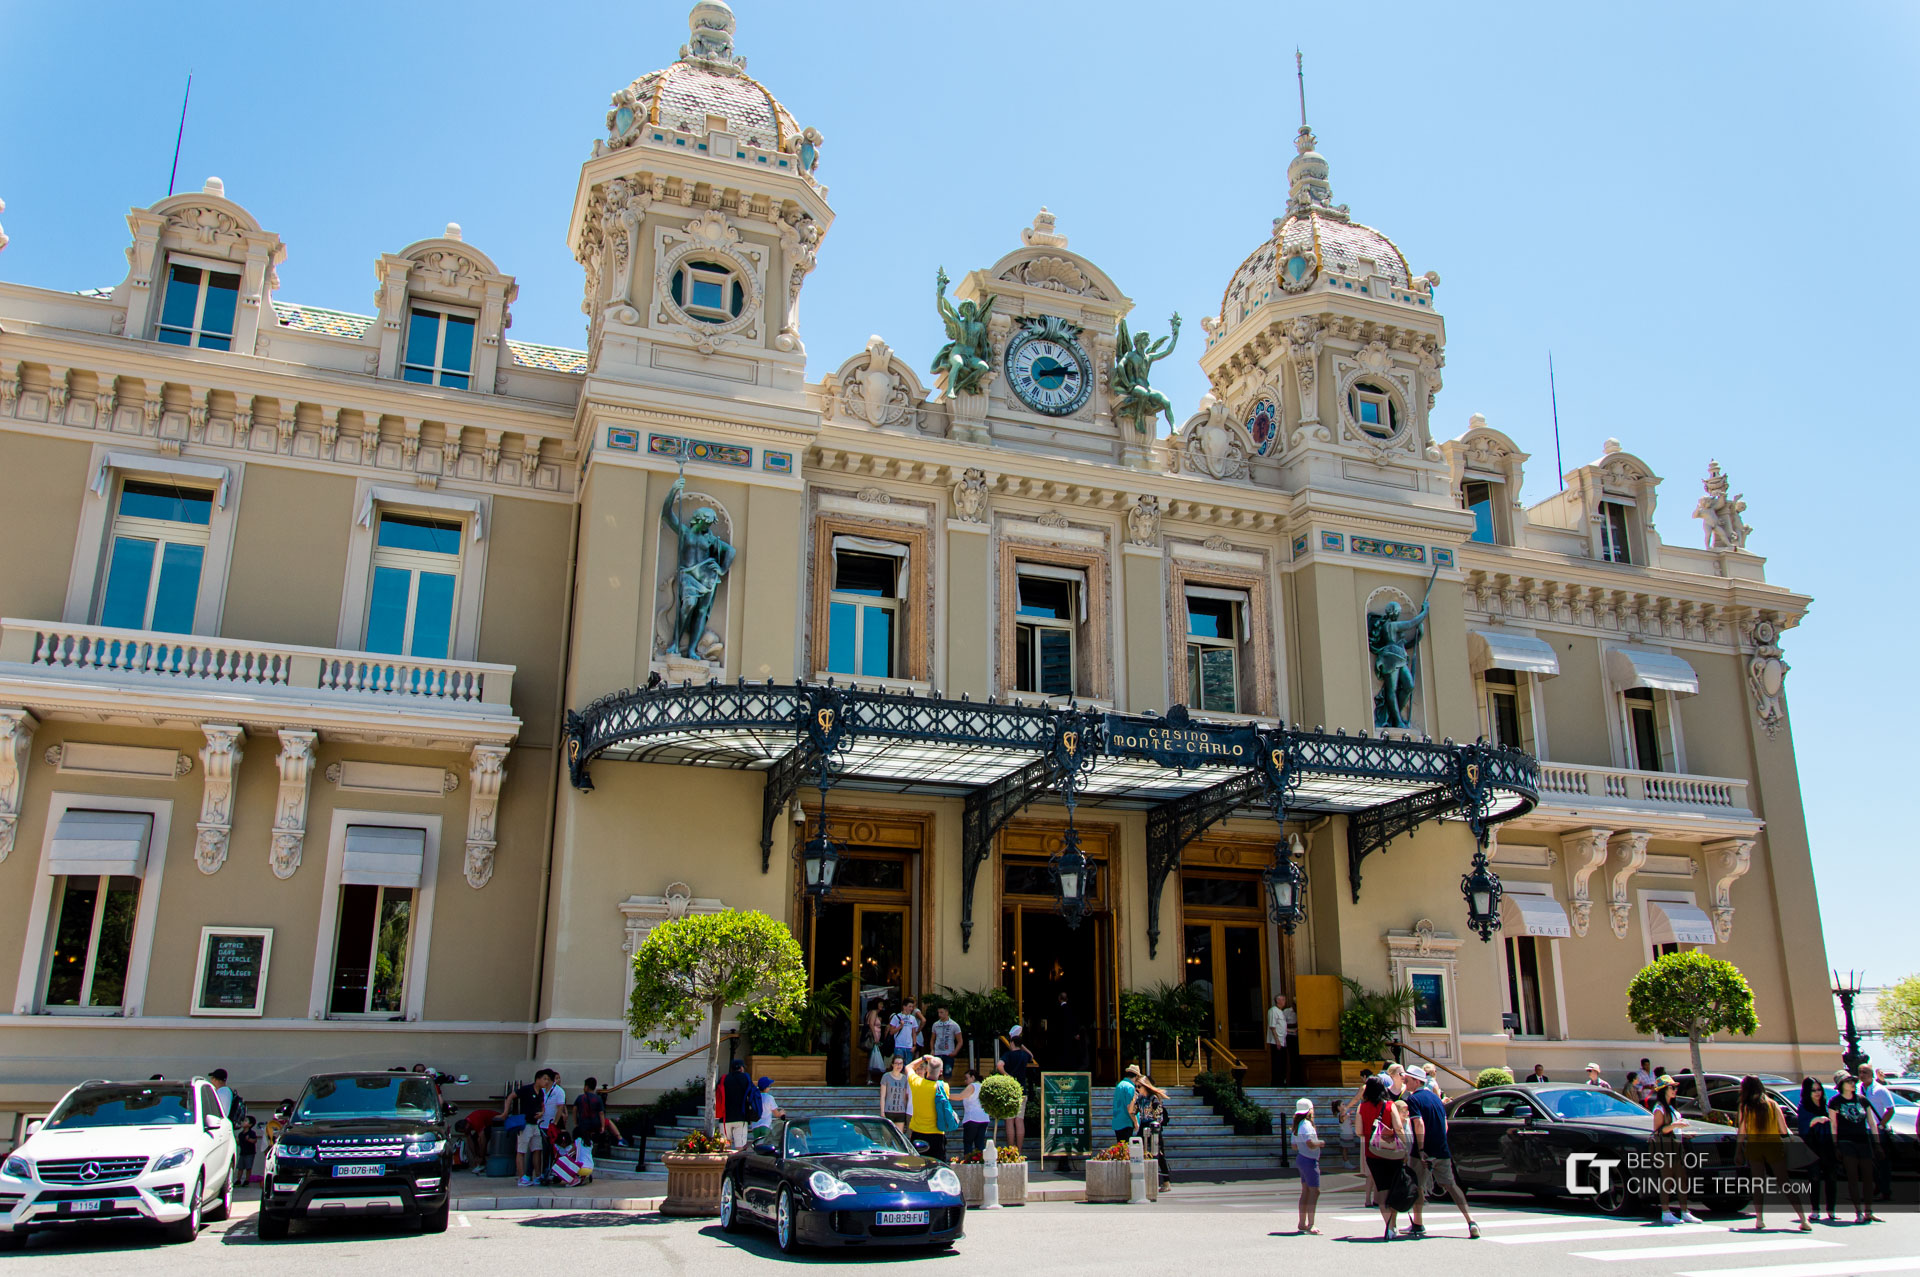 Casino Monte Carlo Eintritt